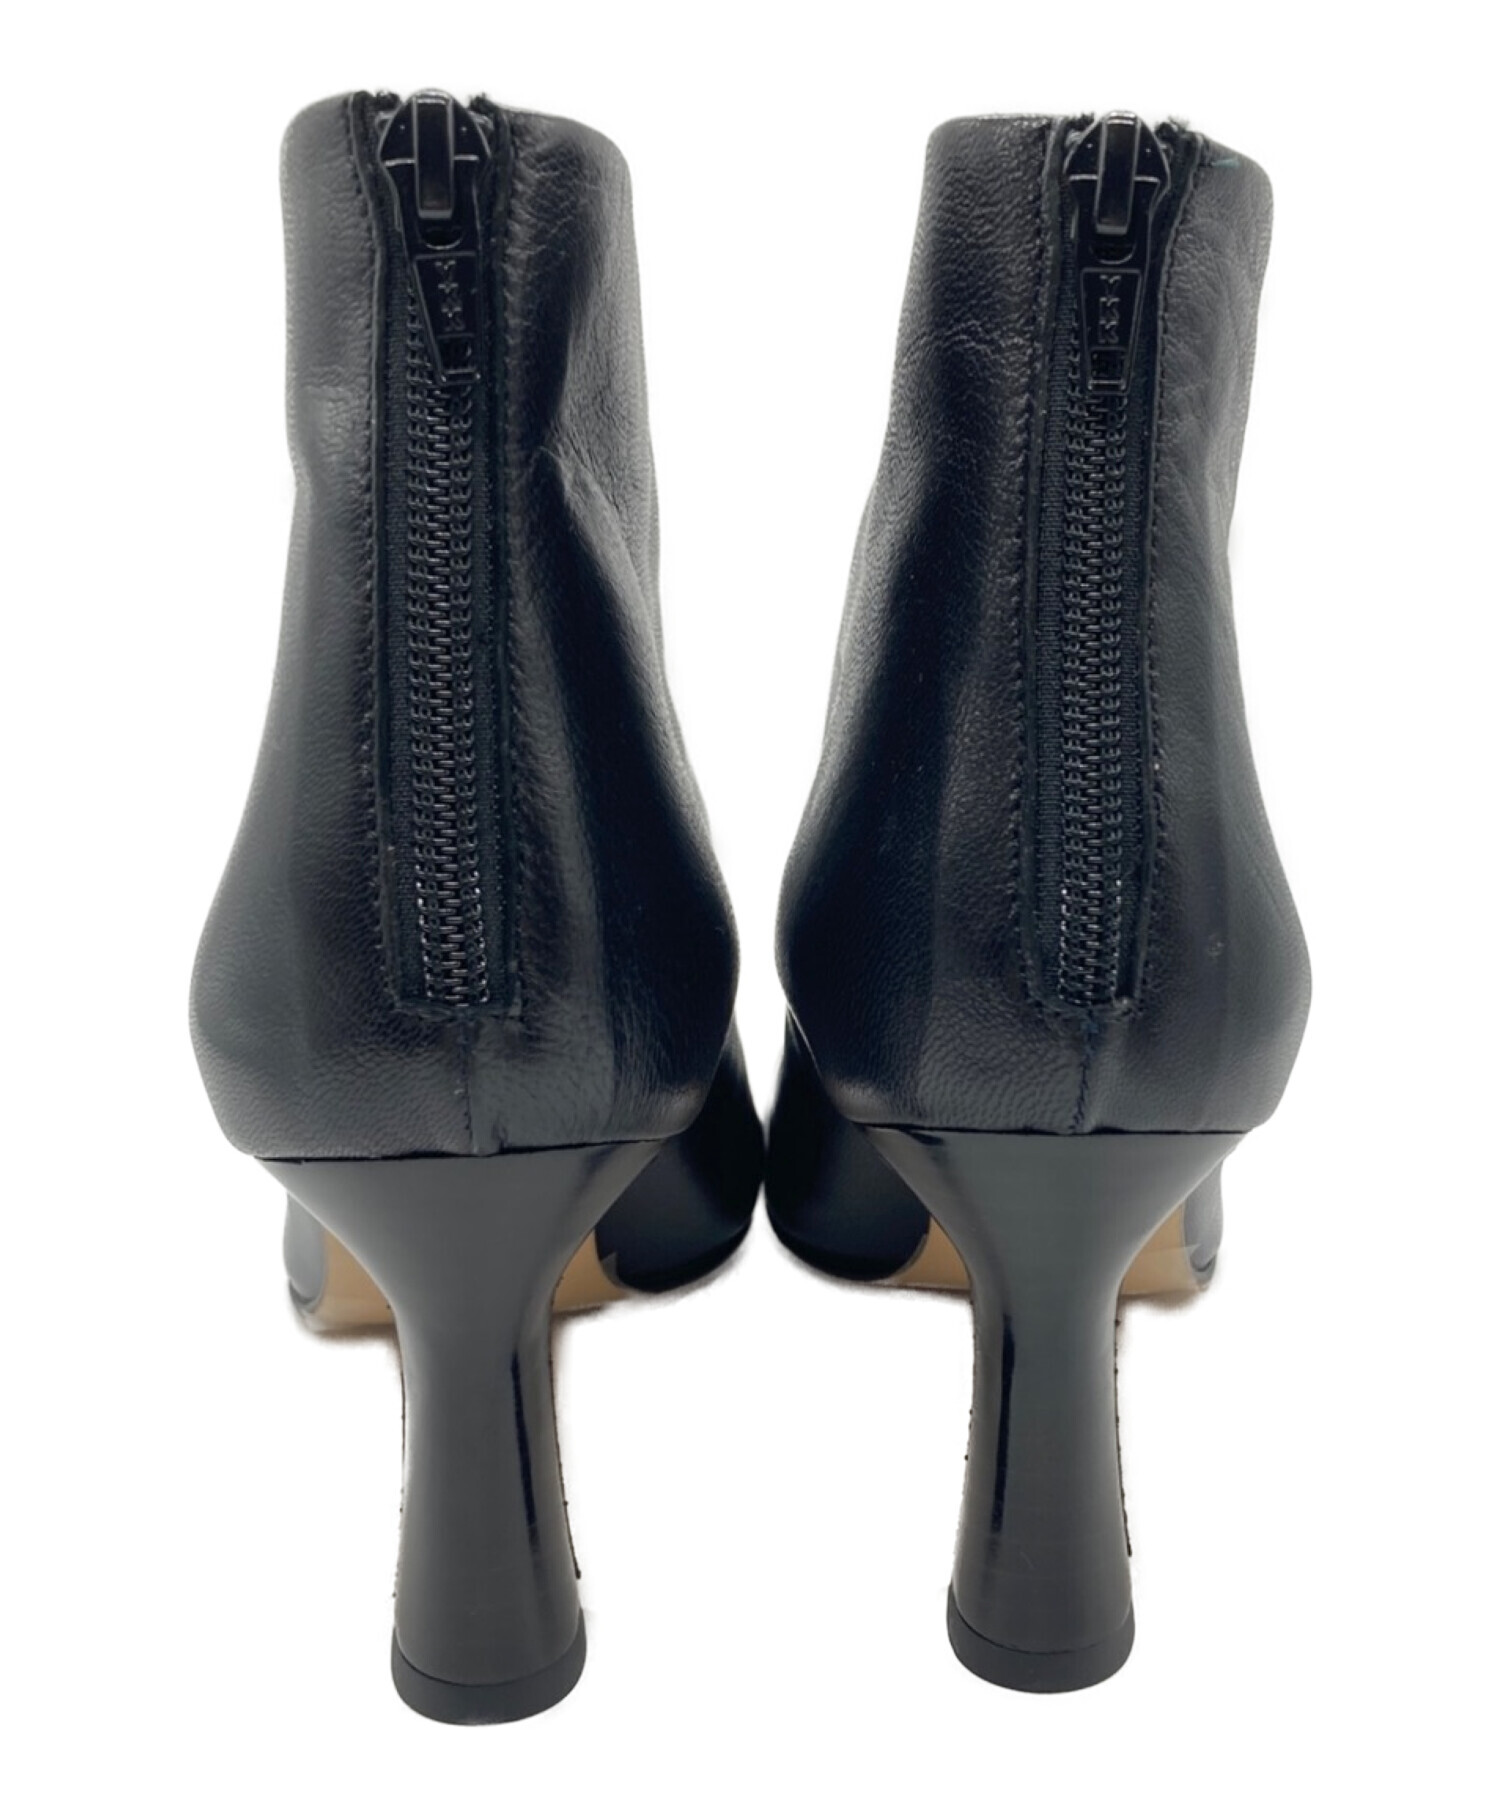 JANE SMITH (ジェーンスミス) ラウンドトゥショートブーツ/Round Toe Short Boots ブラック サイズ:37 未使用品